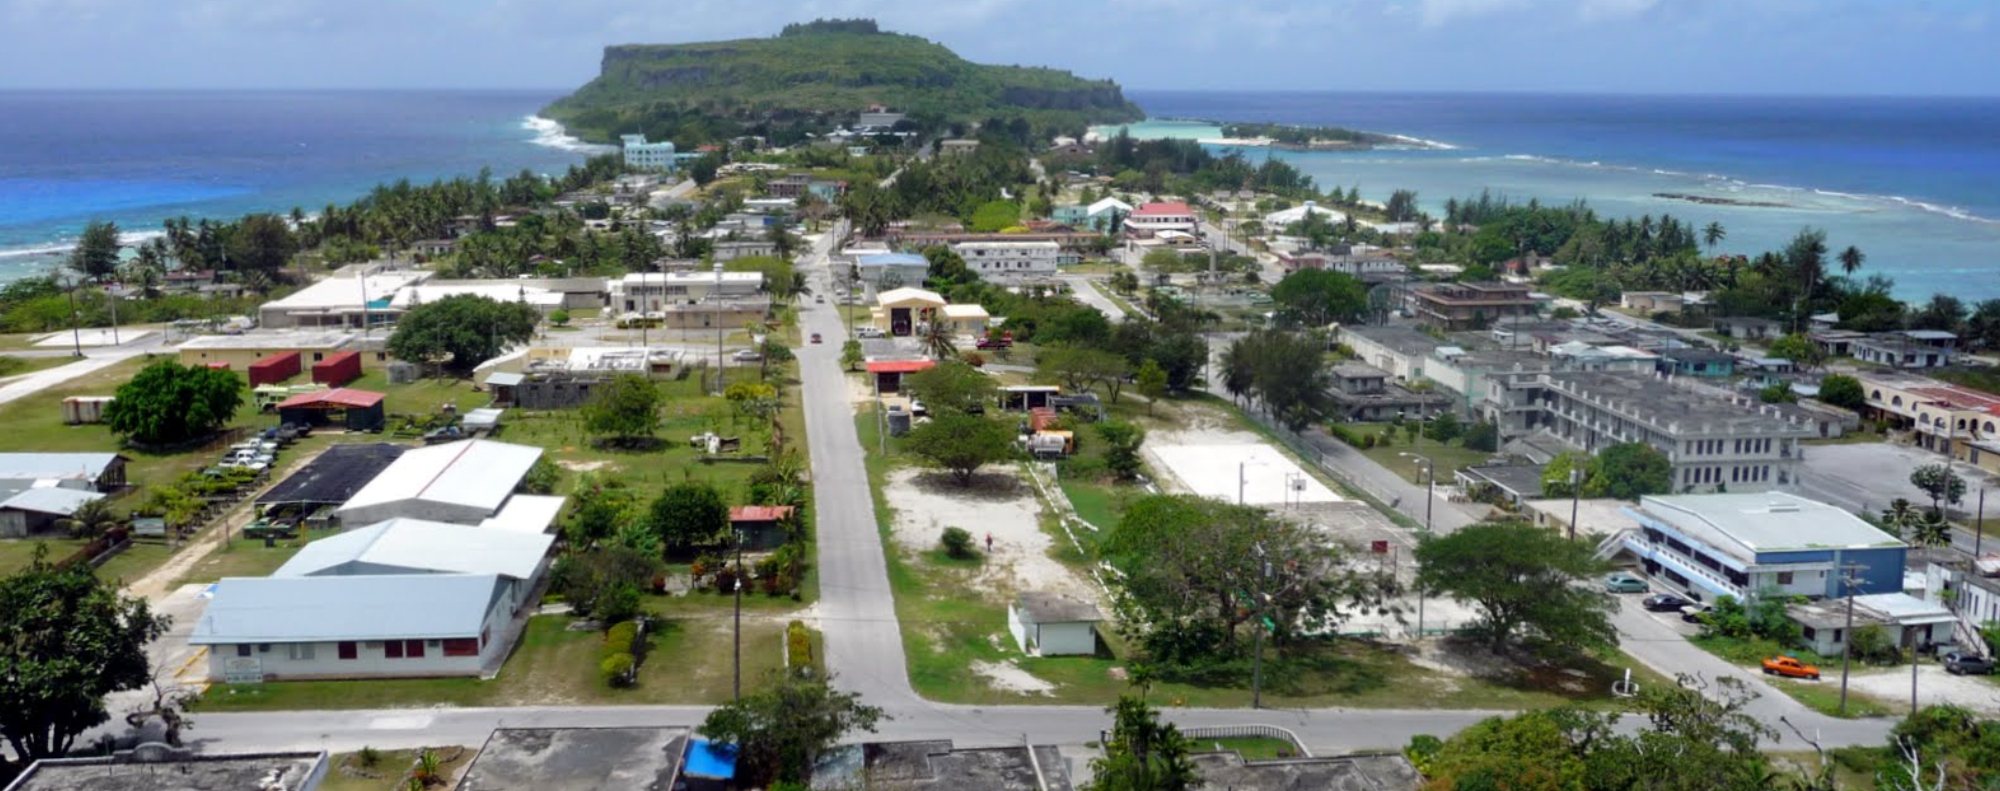 Dịch vụ chuyển phát nhanh DHL đi Micronesia giá rẻ, chuyên nghiệp